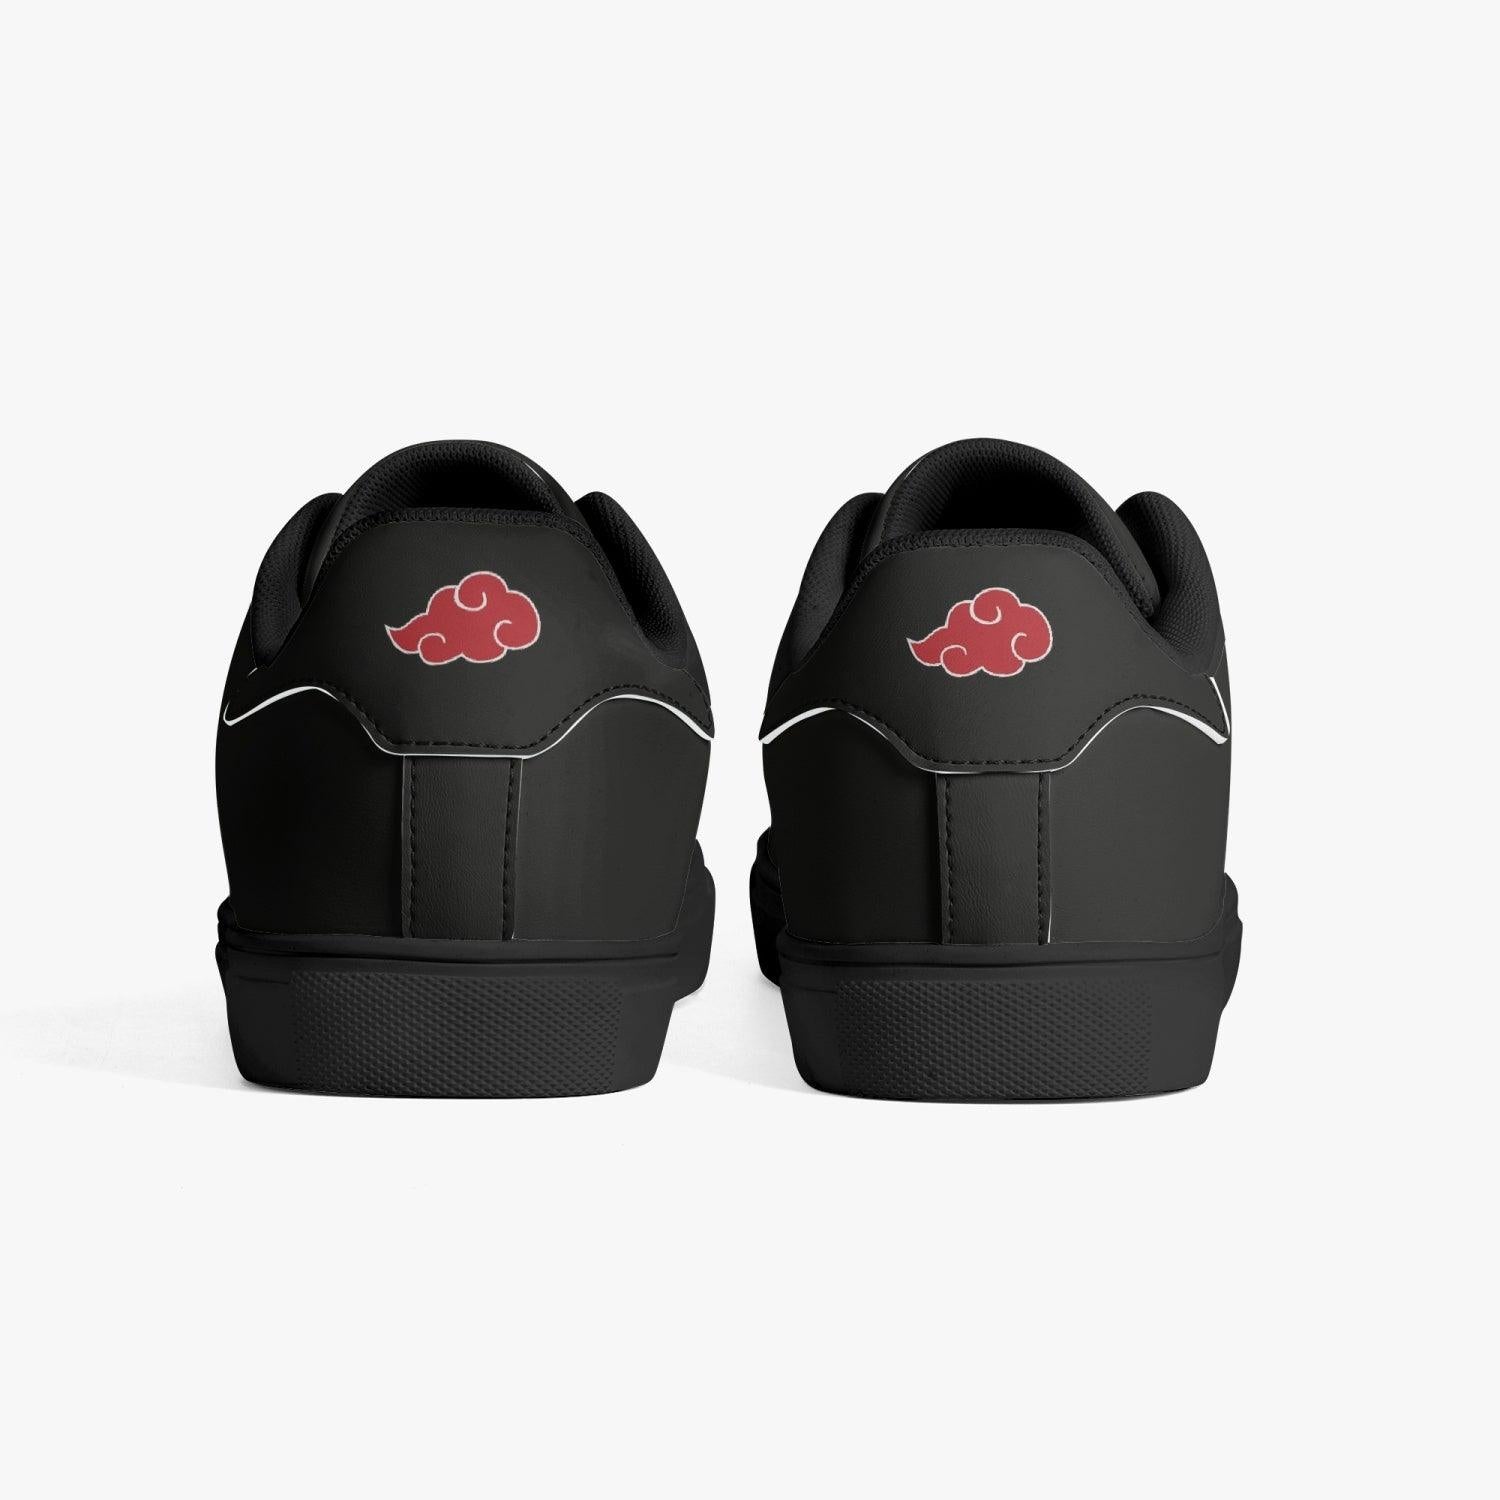 Akatsuki Naruto Leather Smith Shoes-White-Men-US5/EU38-black back view with logo